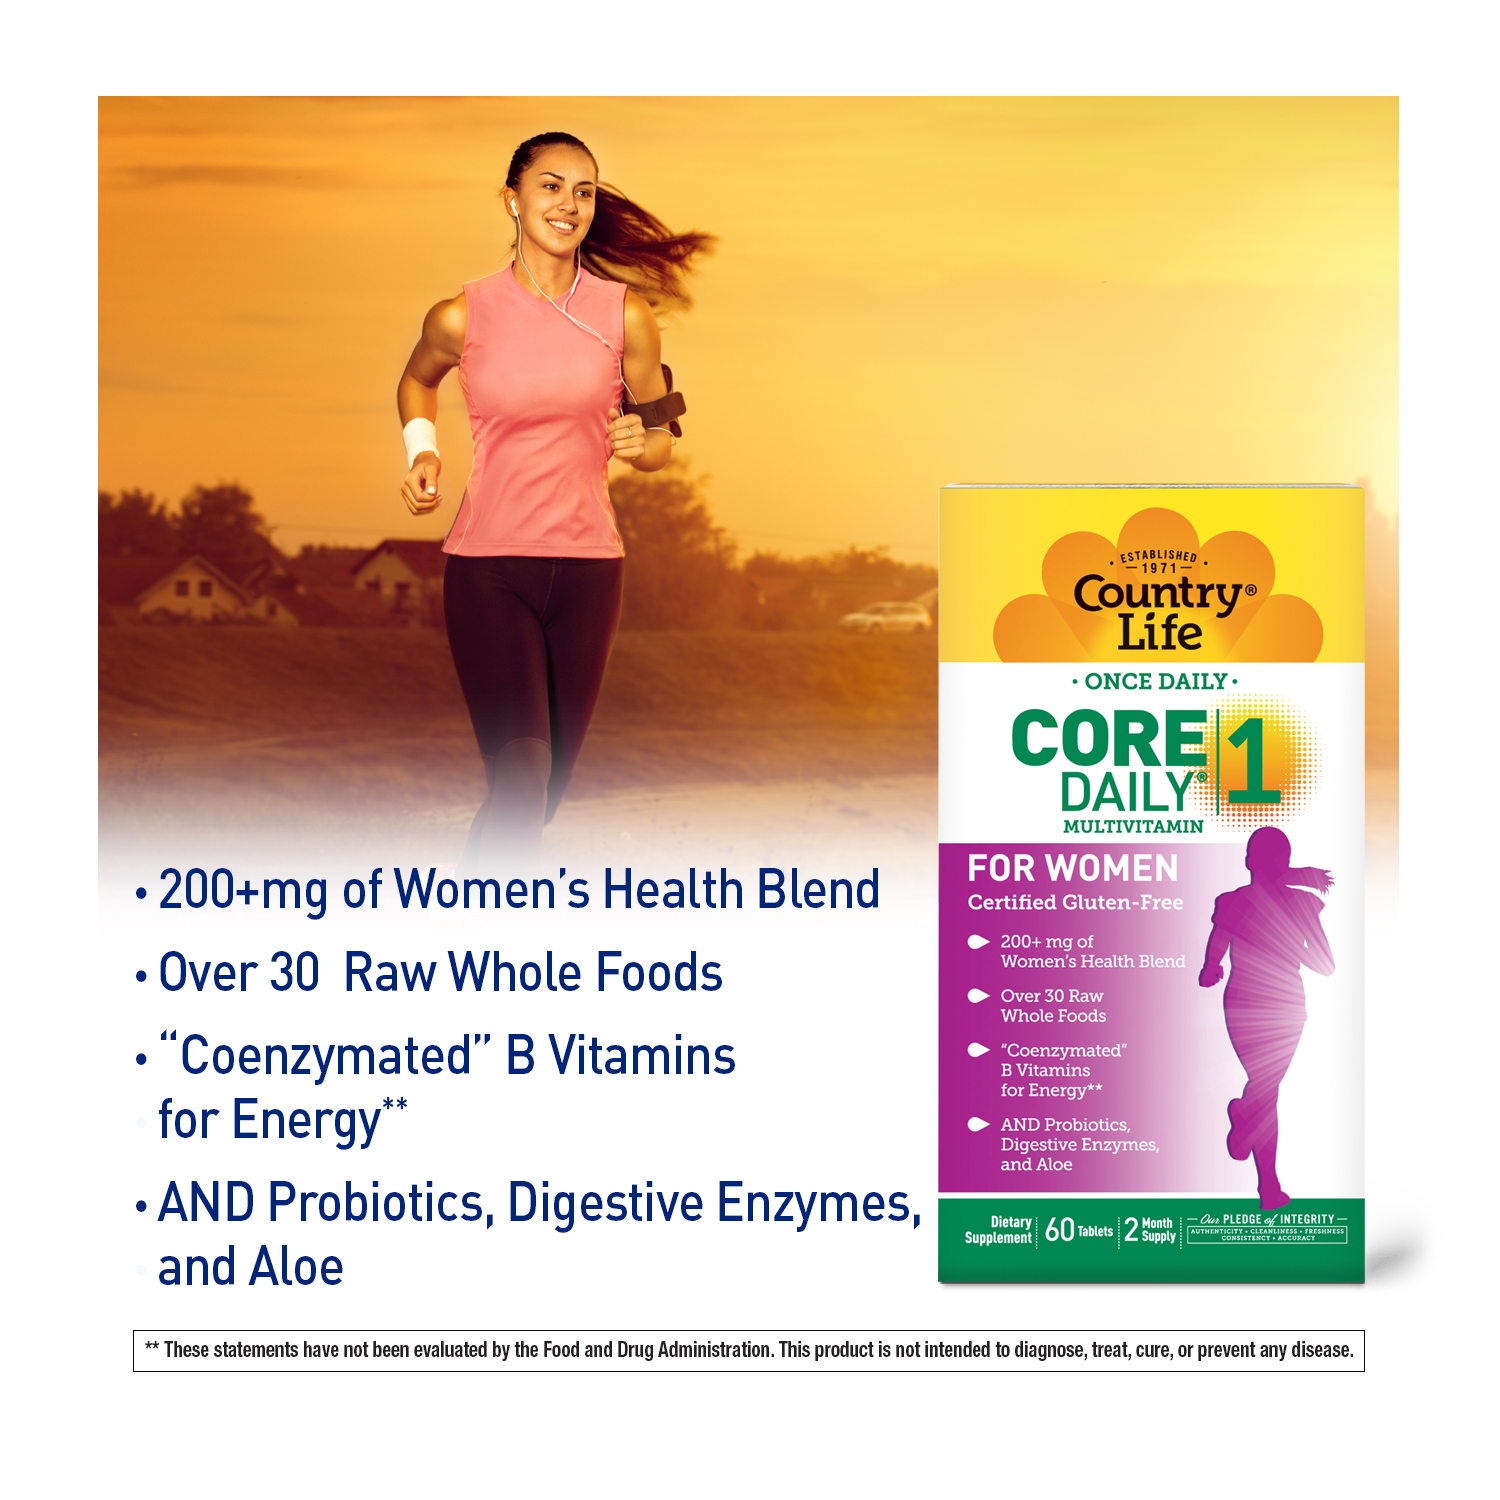 Core Daily-1® for Women Multivitamin